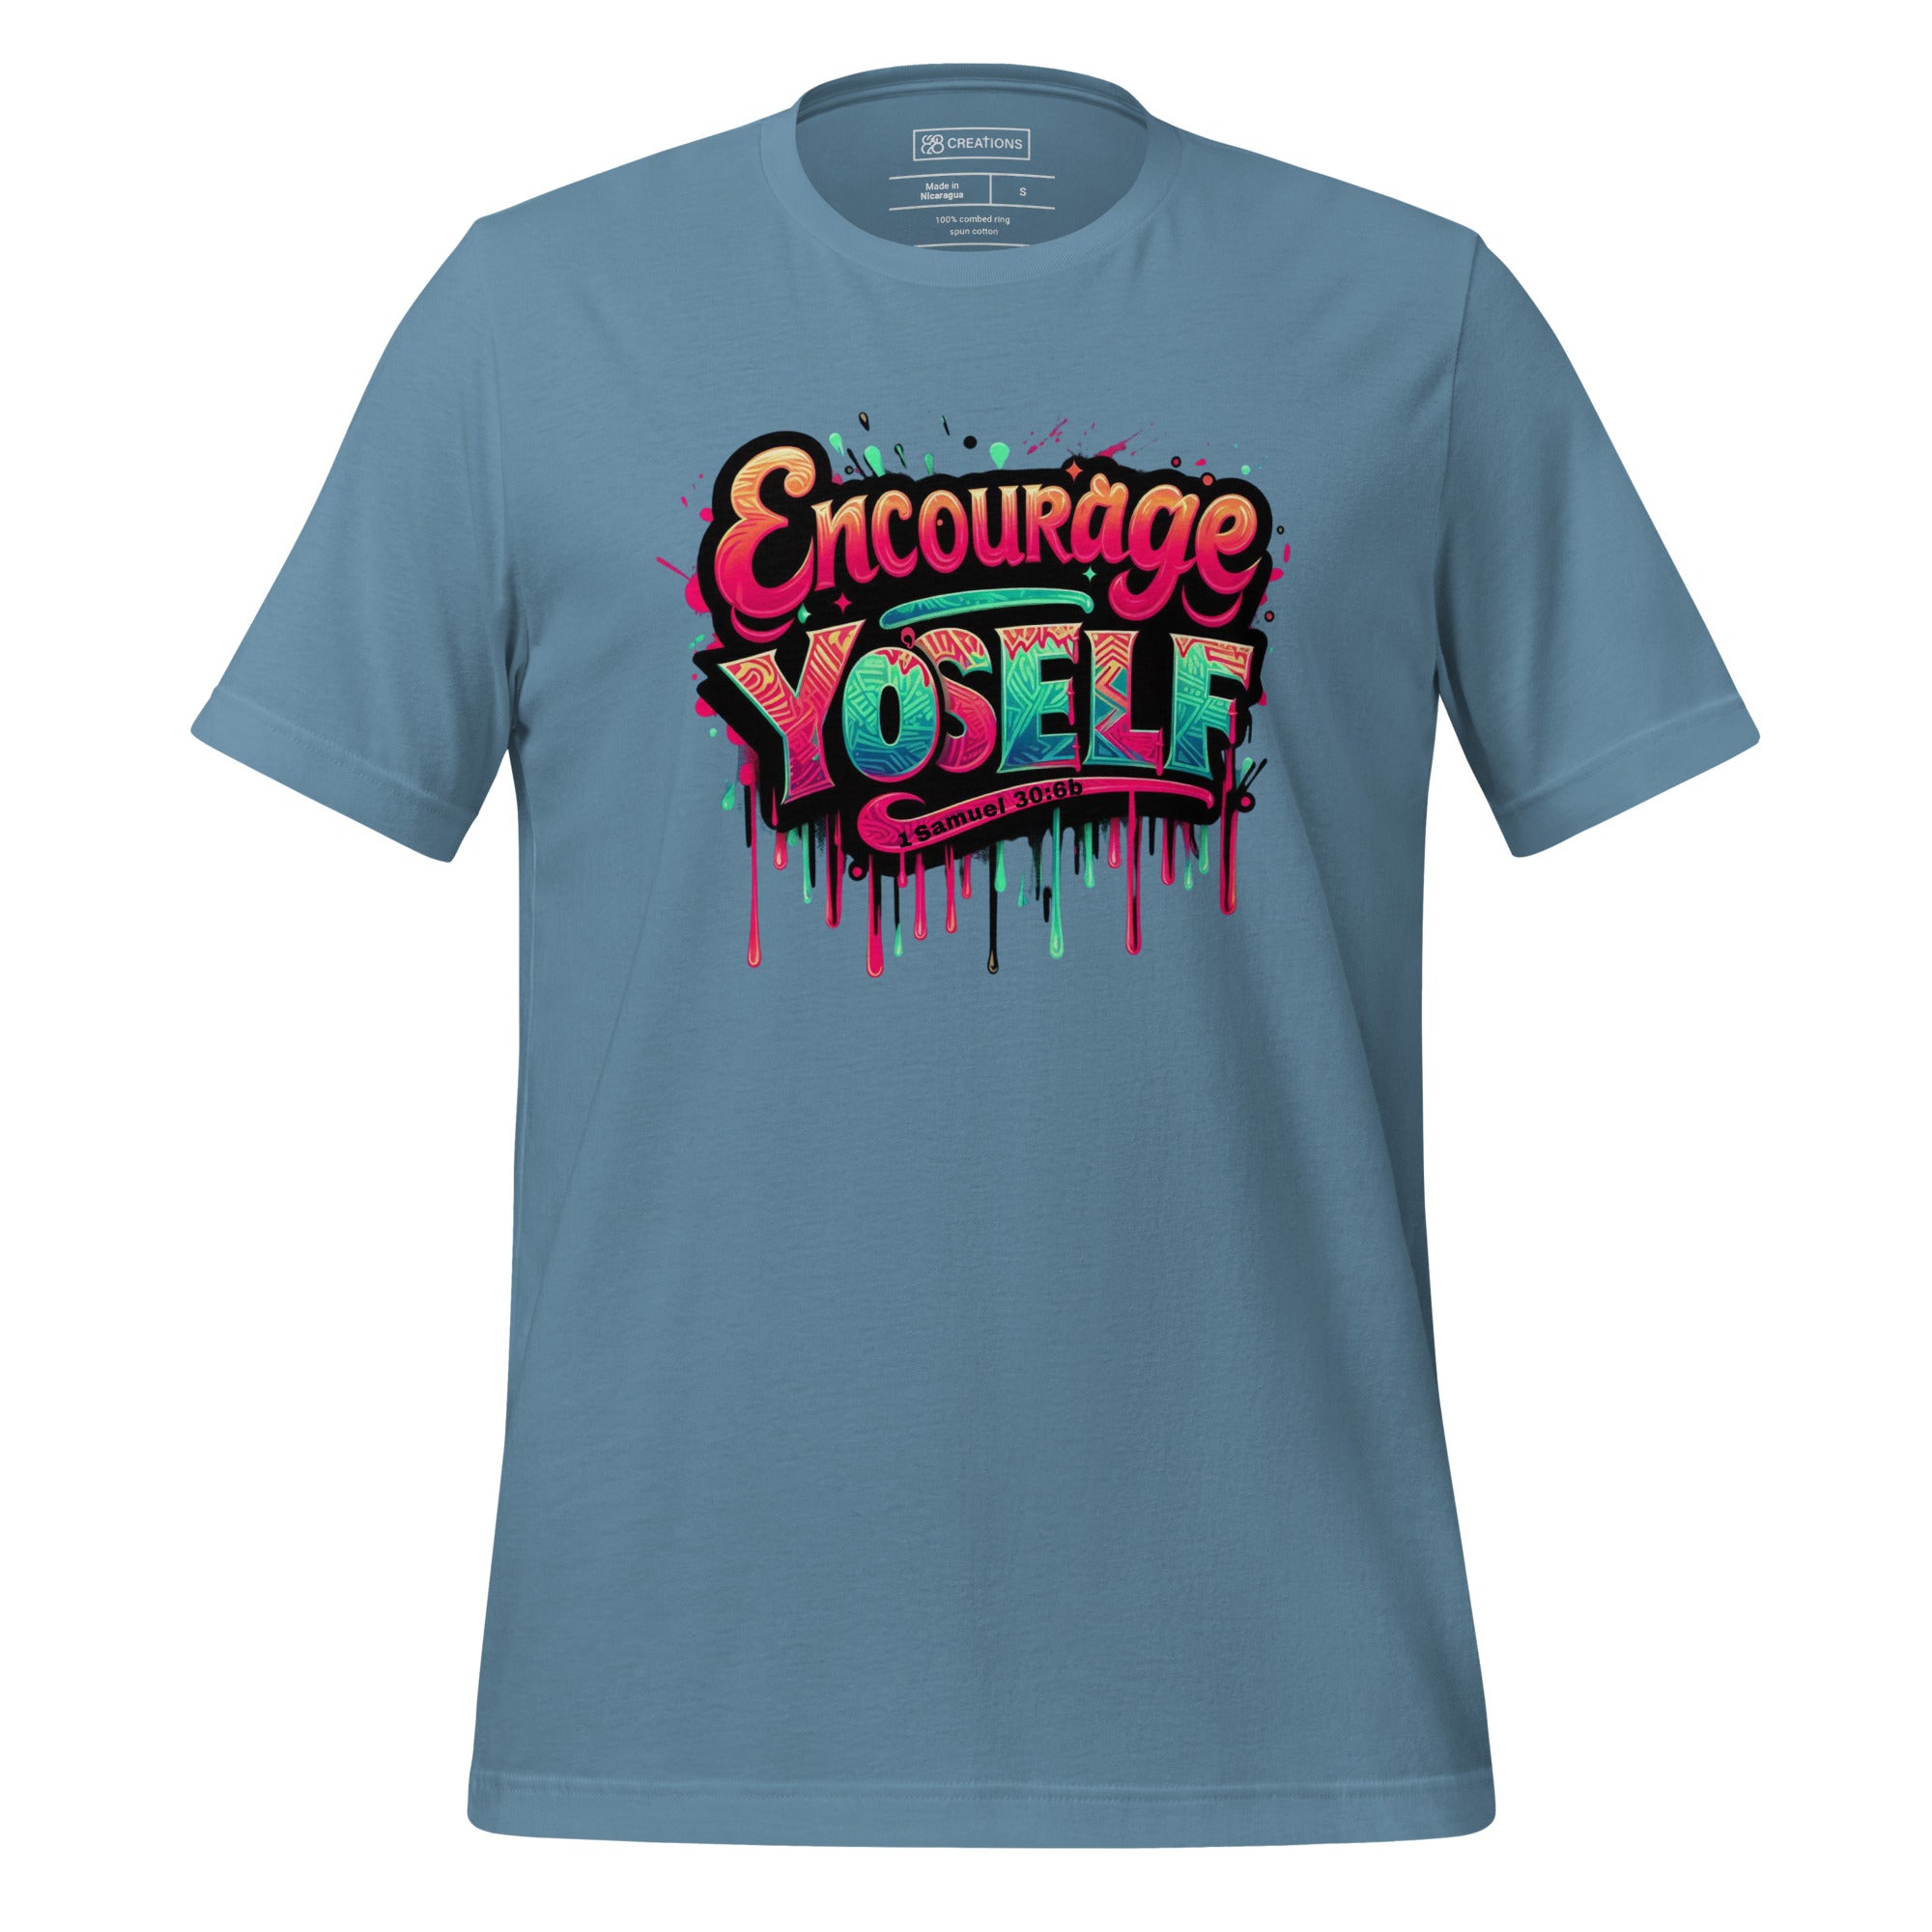 Encourage Yo'self Women's T-Shirt